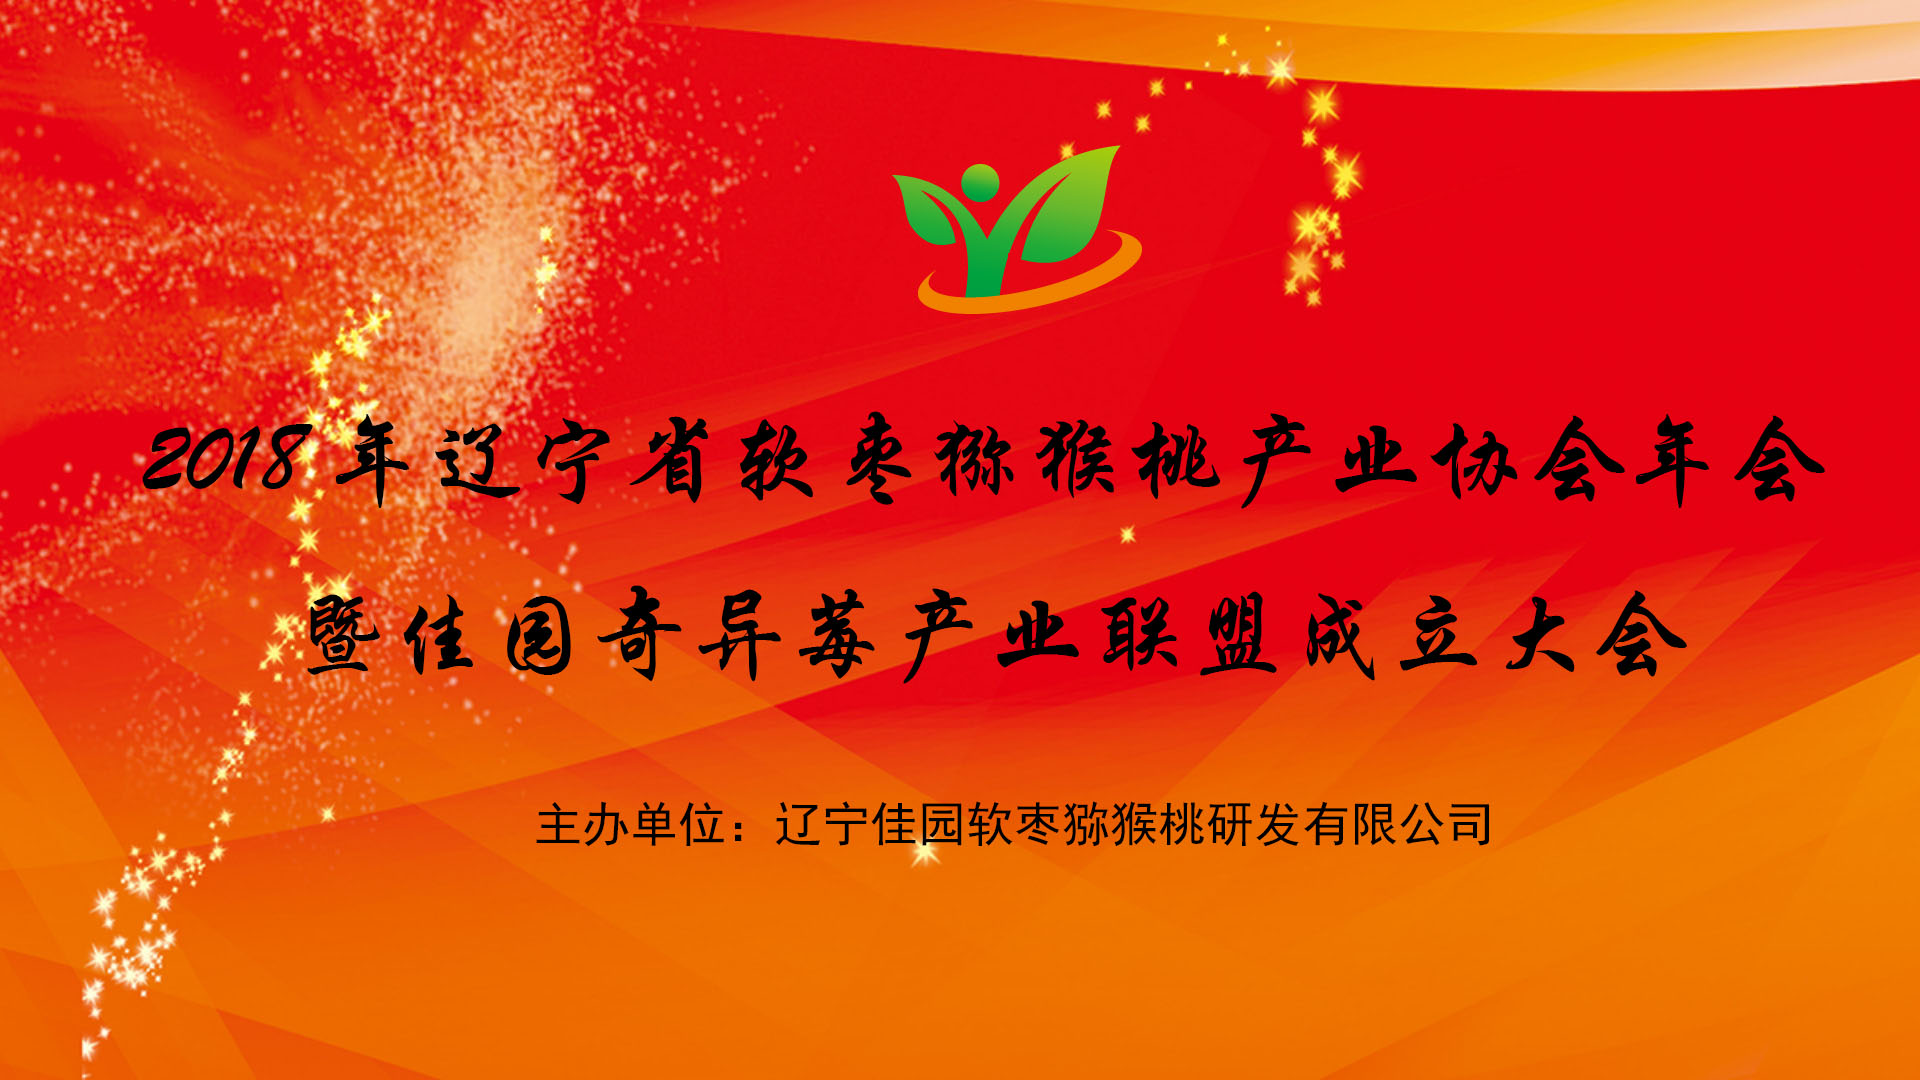 2018年辽宁省软枣猕猴桃产业协会年会暨佳园奇异莓产业联盟成立通知